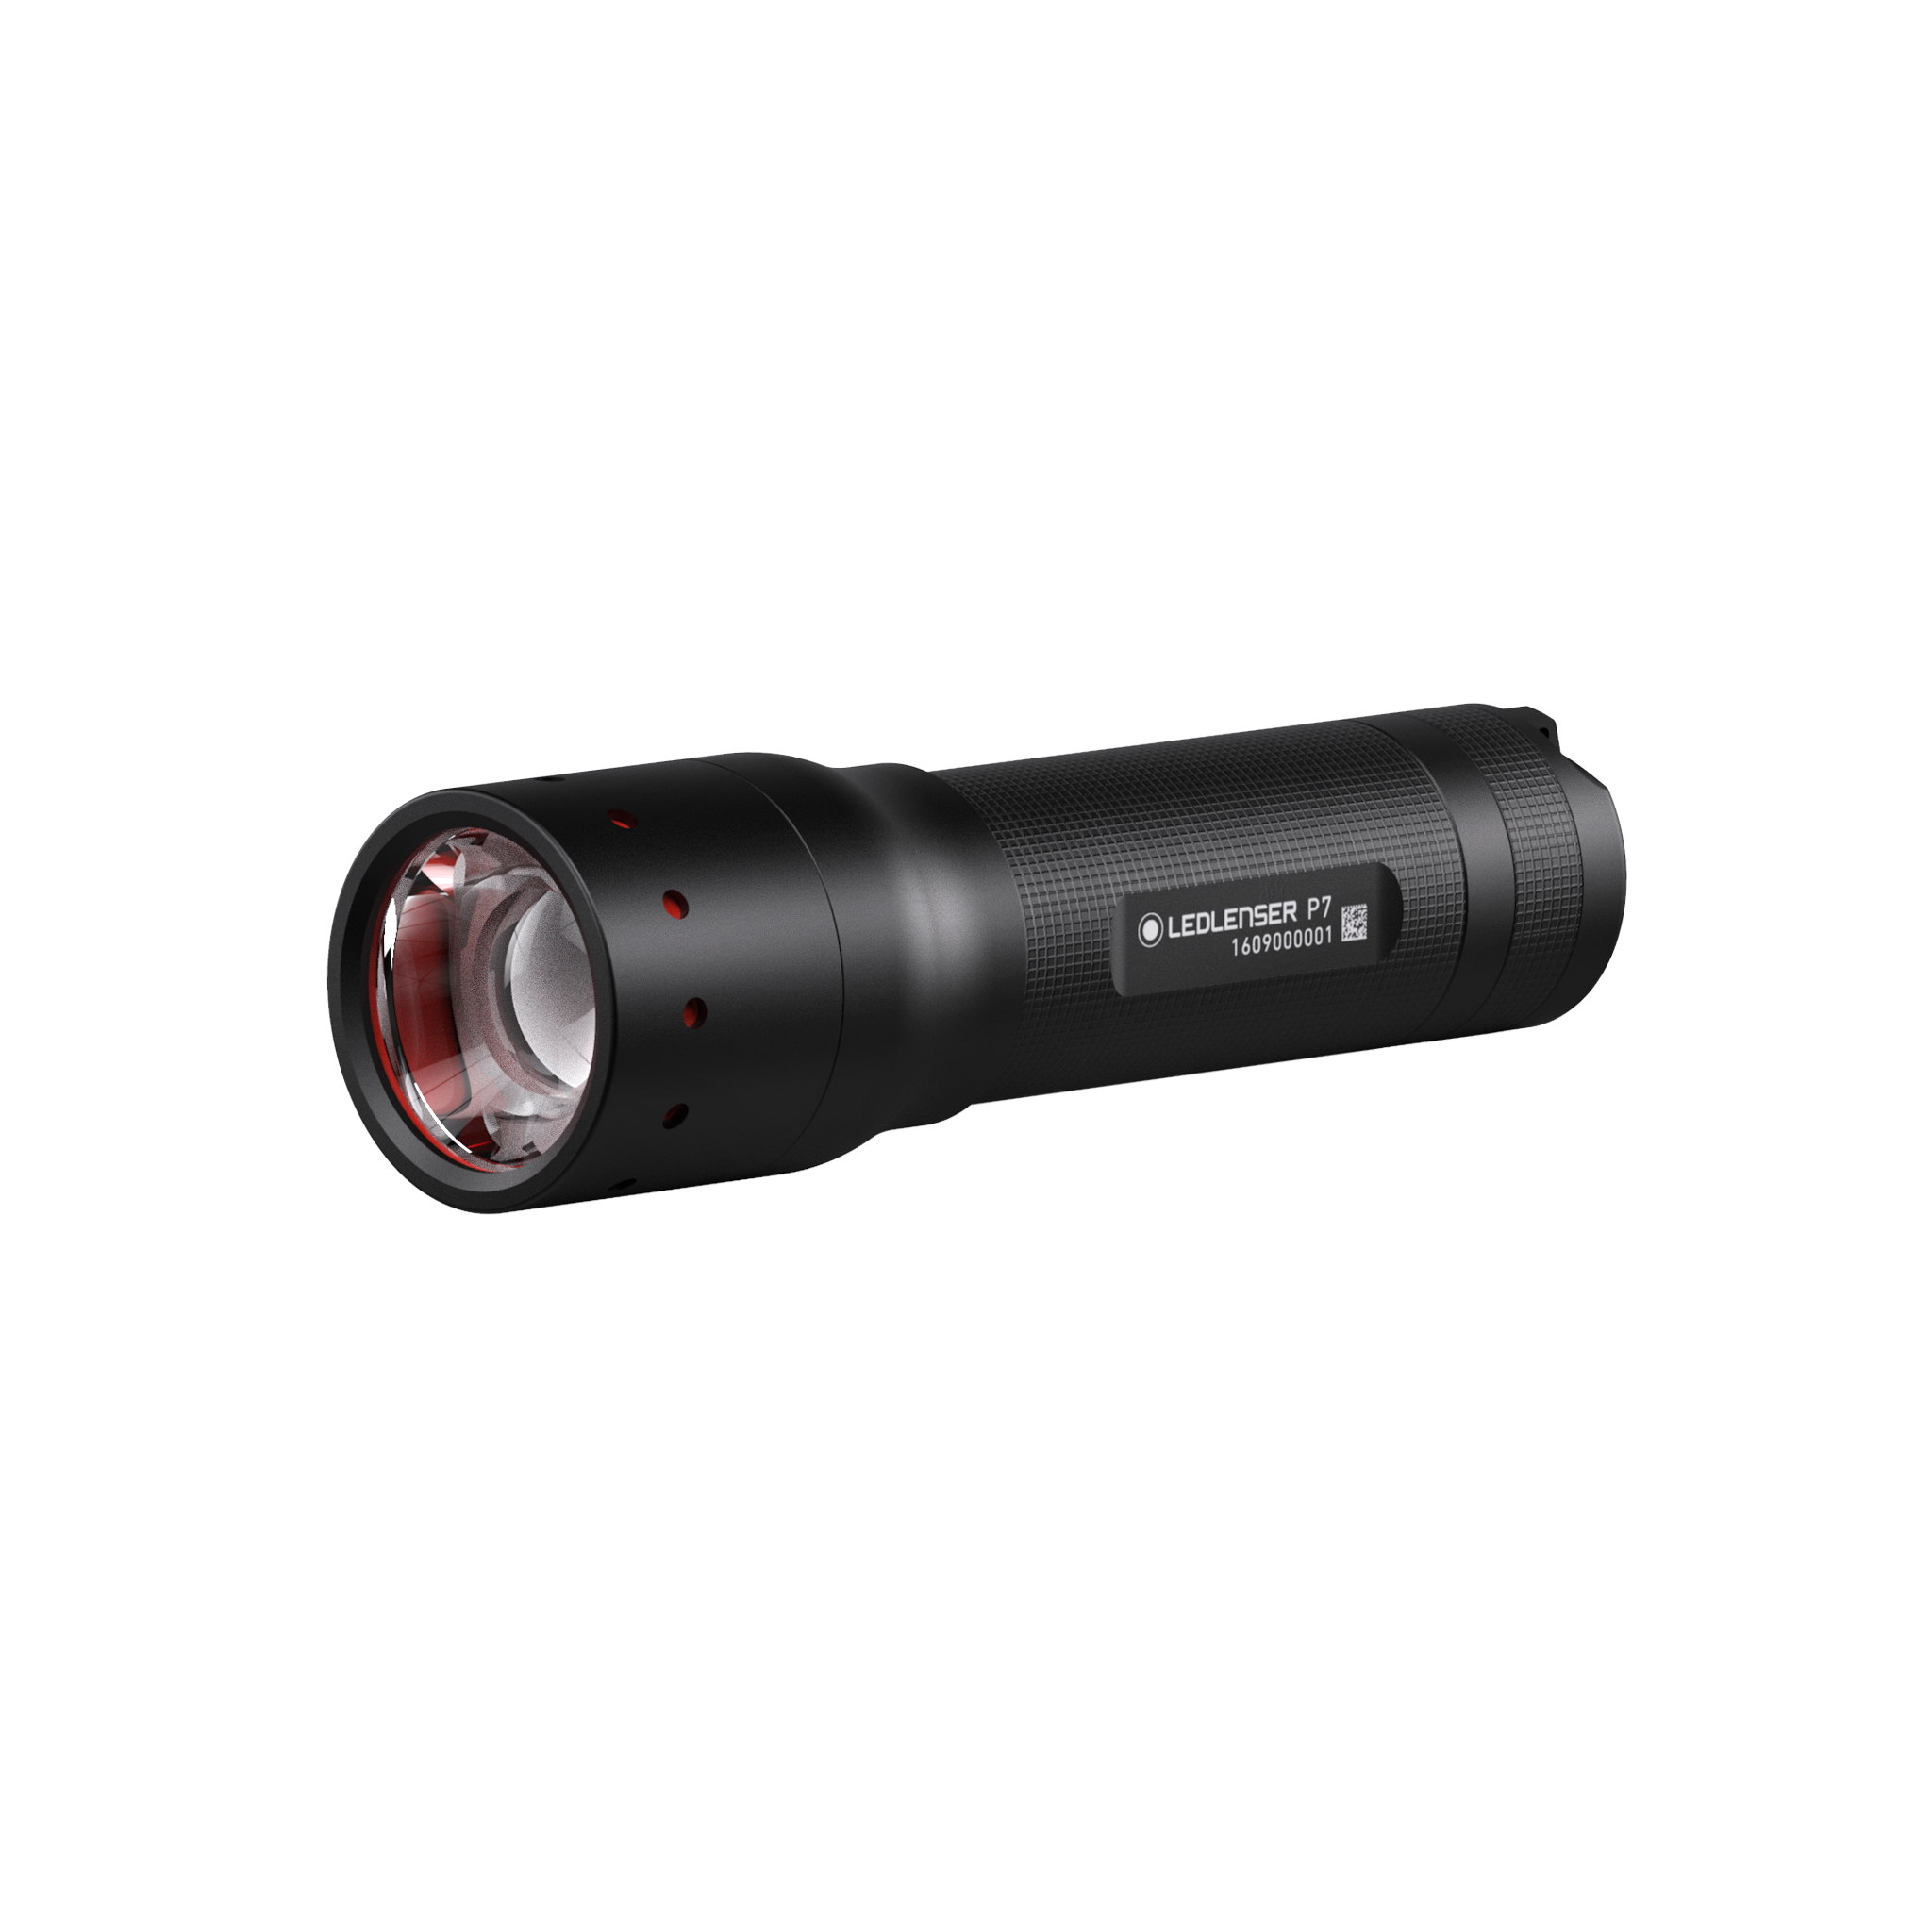 Led Lenser P7 | Shop Ledlenser P7 Flashlight | Ledlenser USA